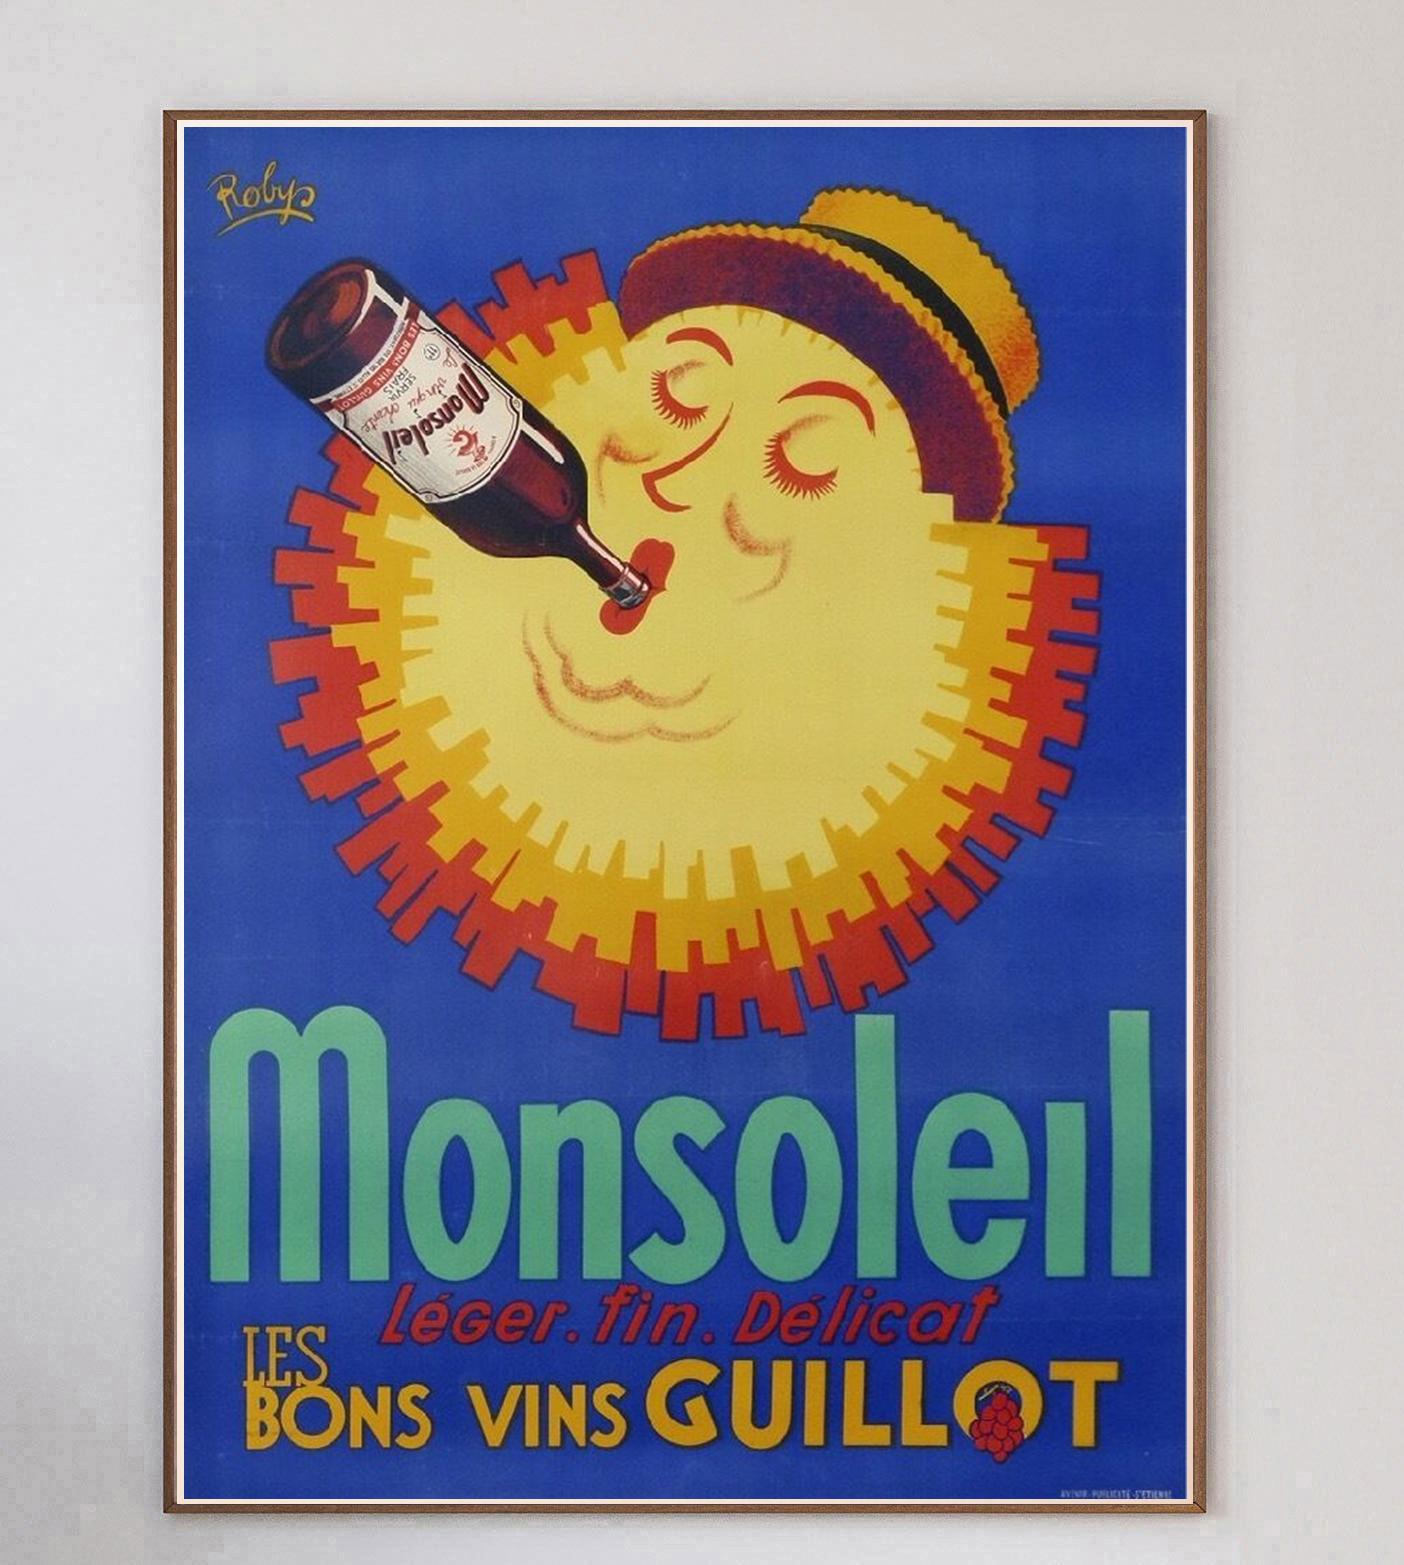 Superbe affiche publicitaire pour le vin français Monsoleil. Créée en 1930 et dessinée par l'artiste affichiste Robert Wolff, plus connu sous le nom de Robys, la pièce est en parfait état et soutenue sur une toile de qualité musée afin d'assurer sa